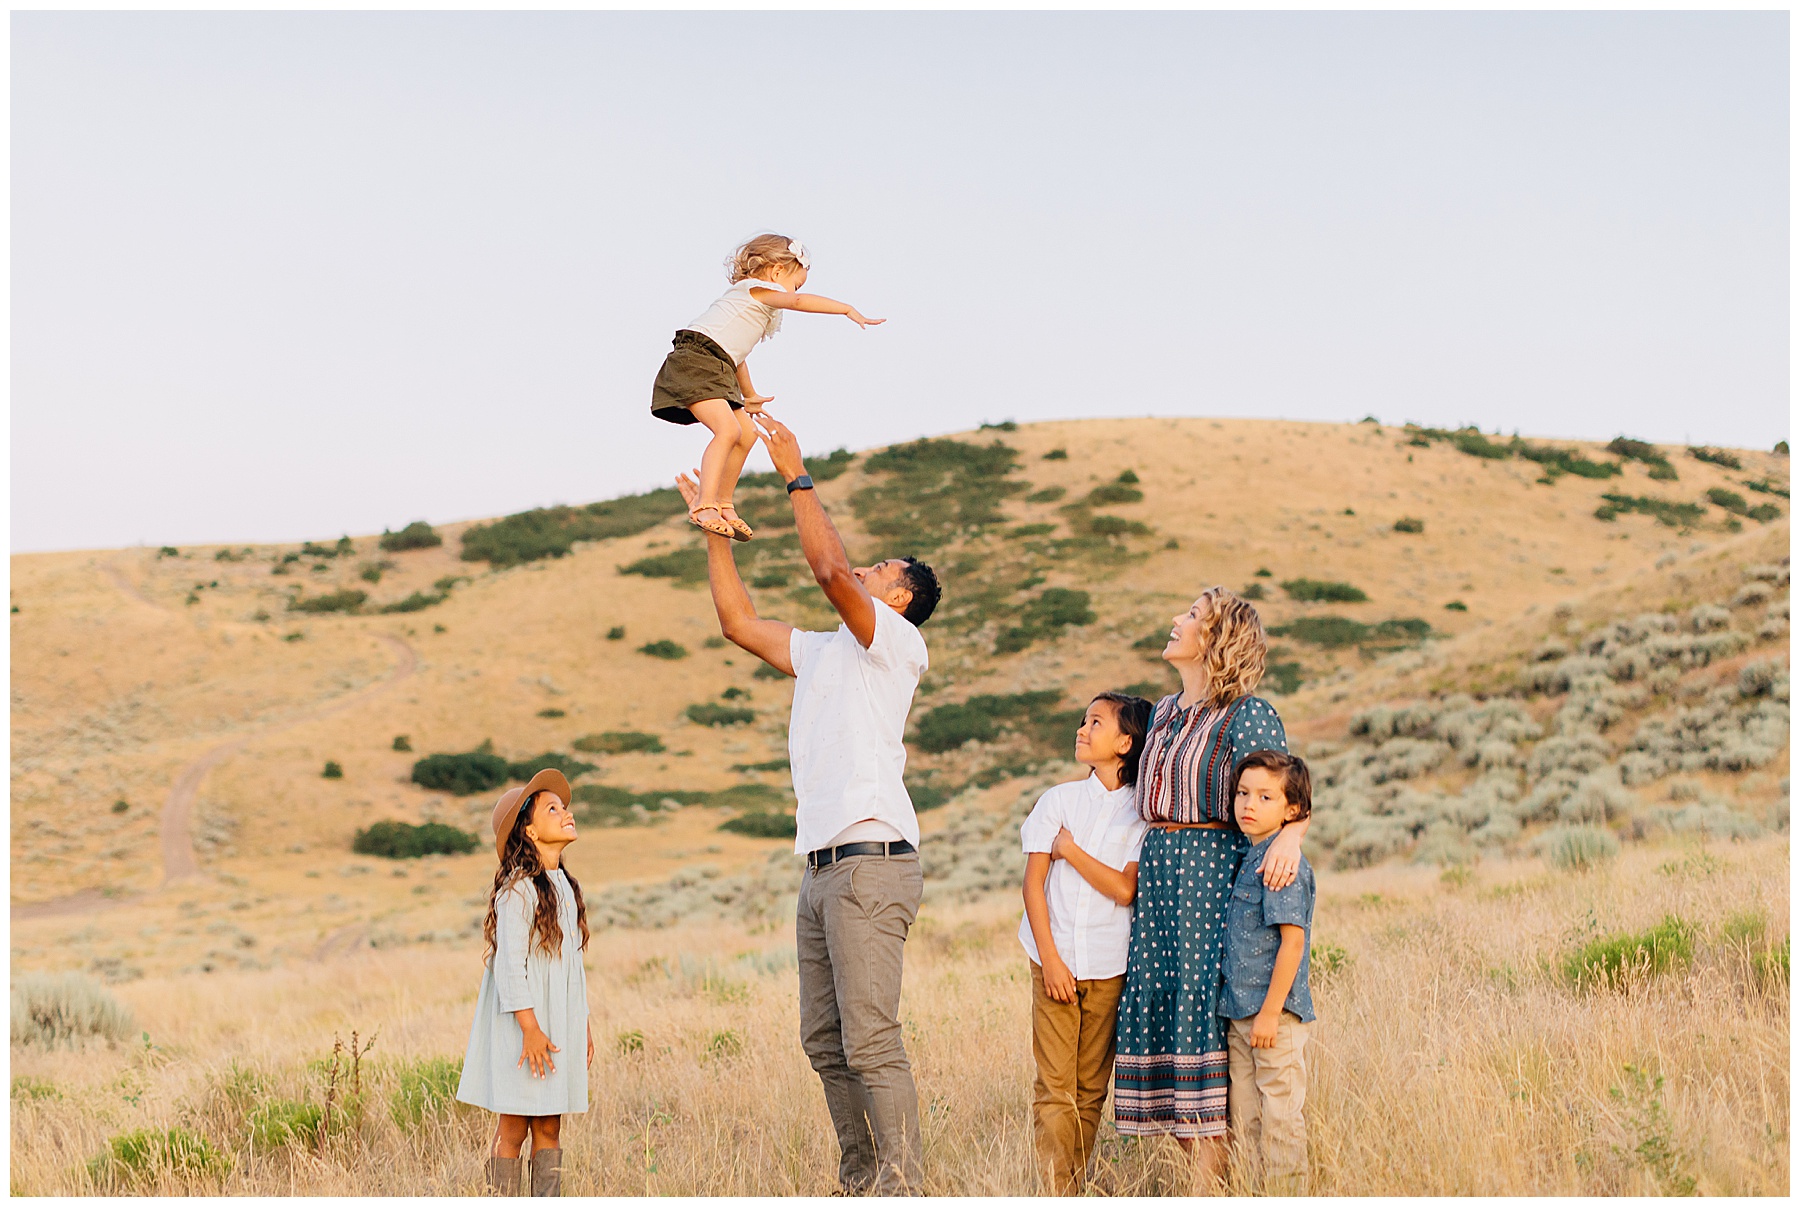 Fall Family Pictures Utah | Racule Family